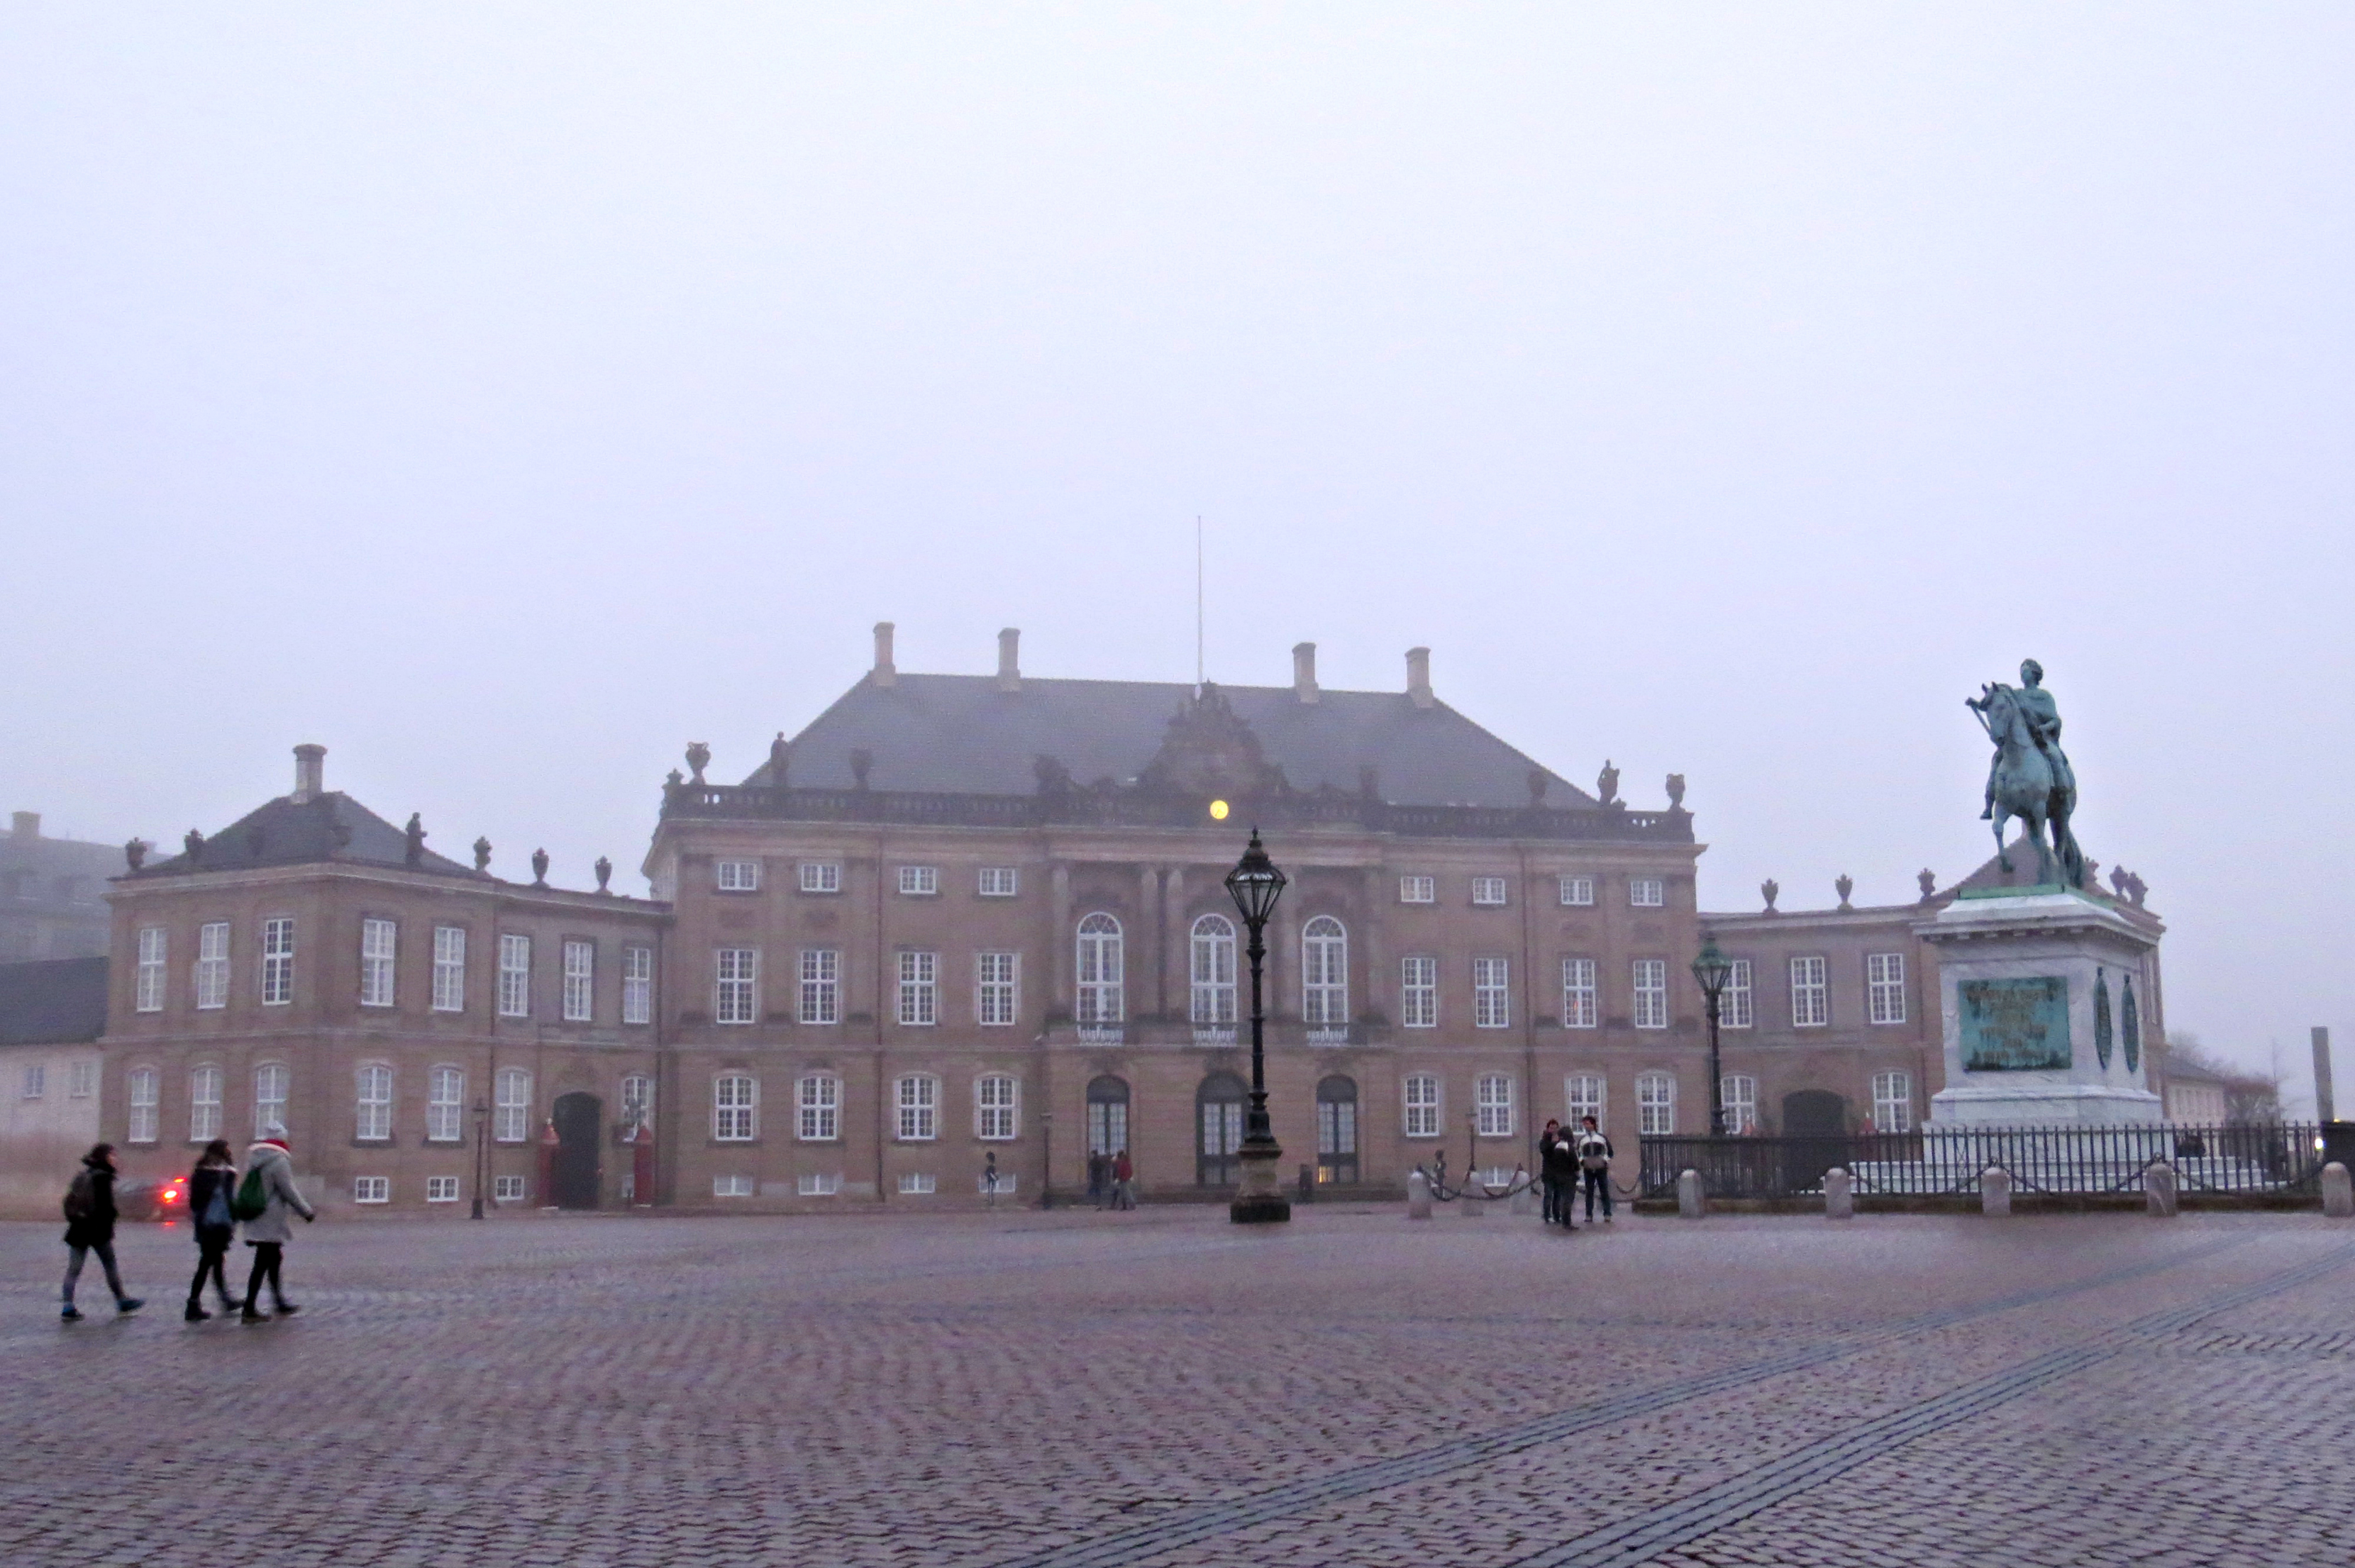 Copenhagen - Amalienborg